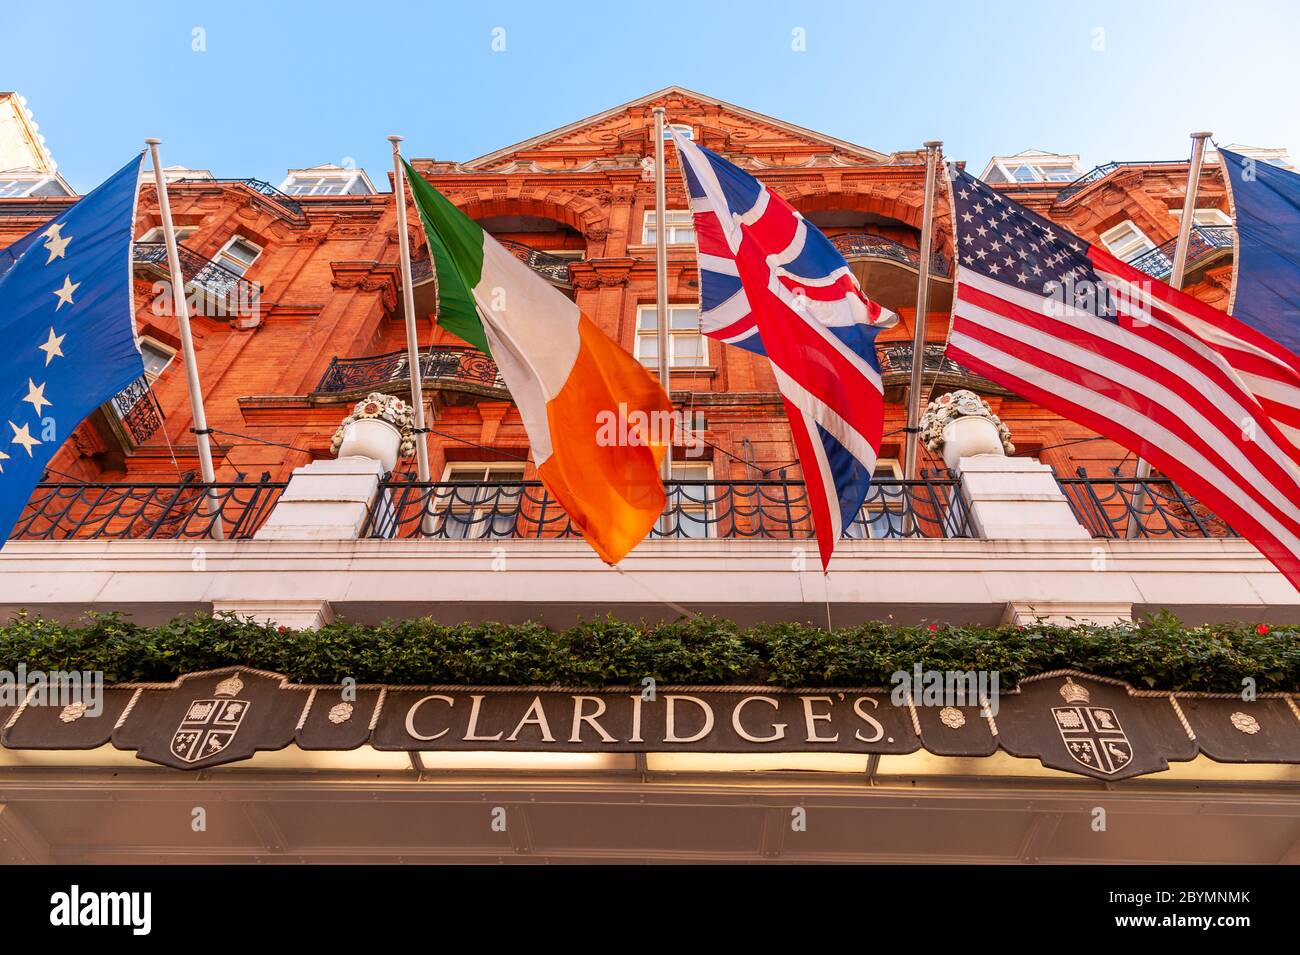 Claridges Hotel, London, UK Stock Photo